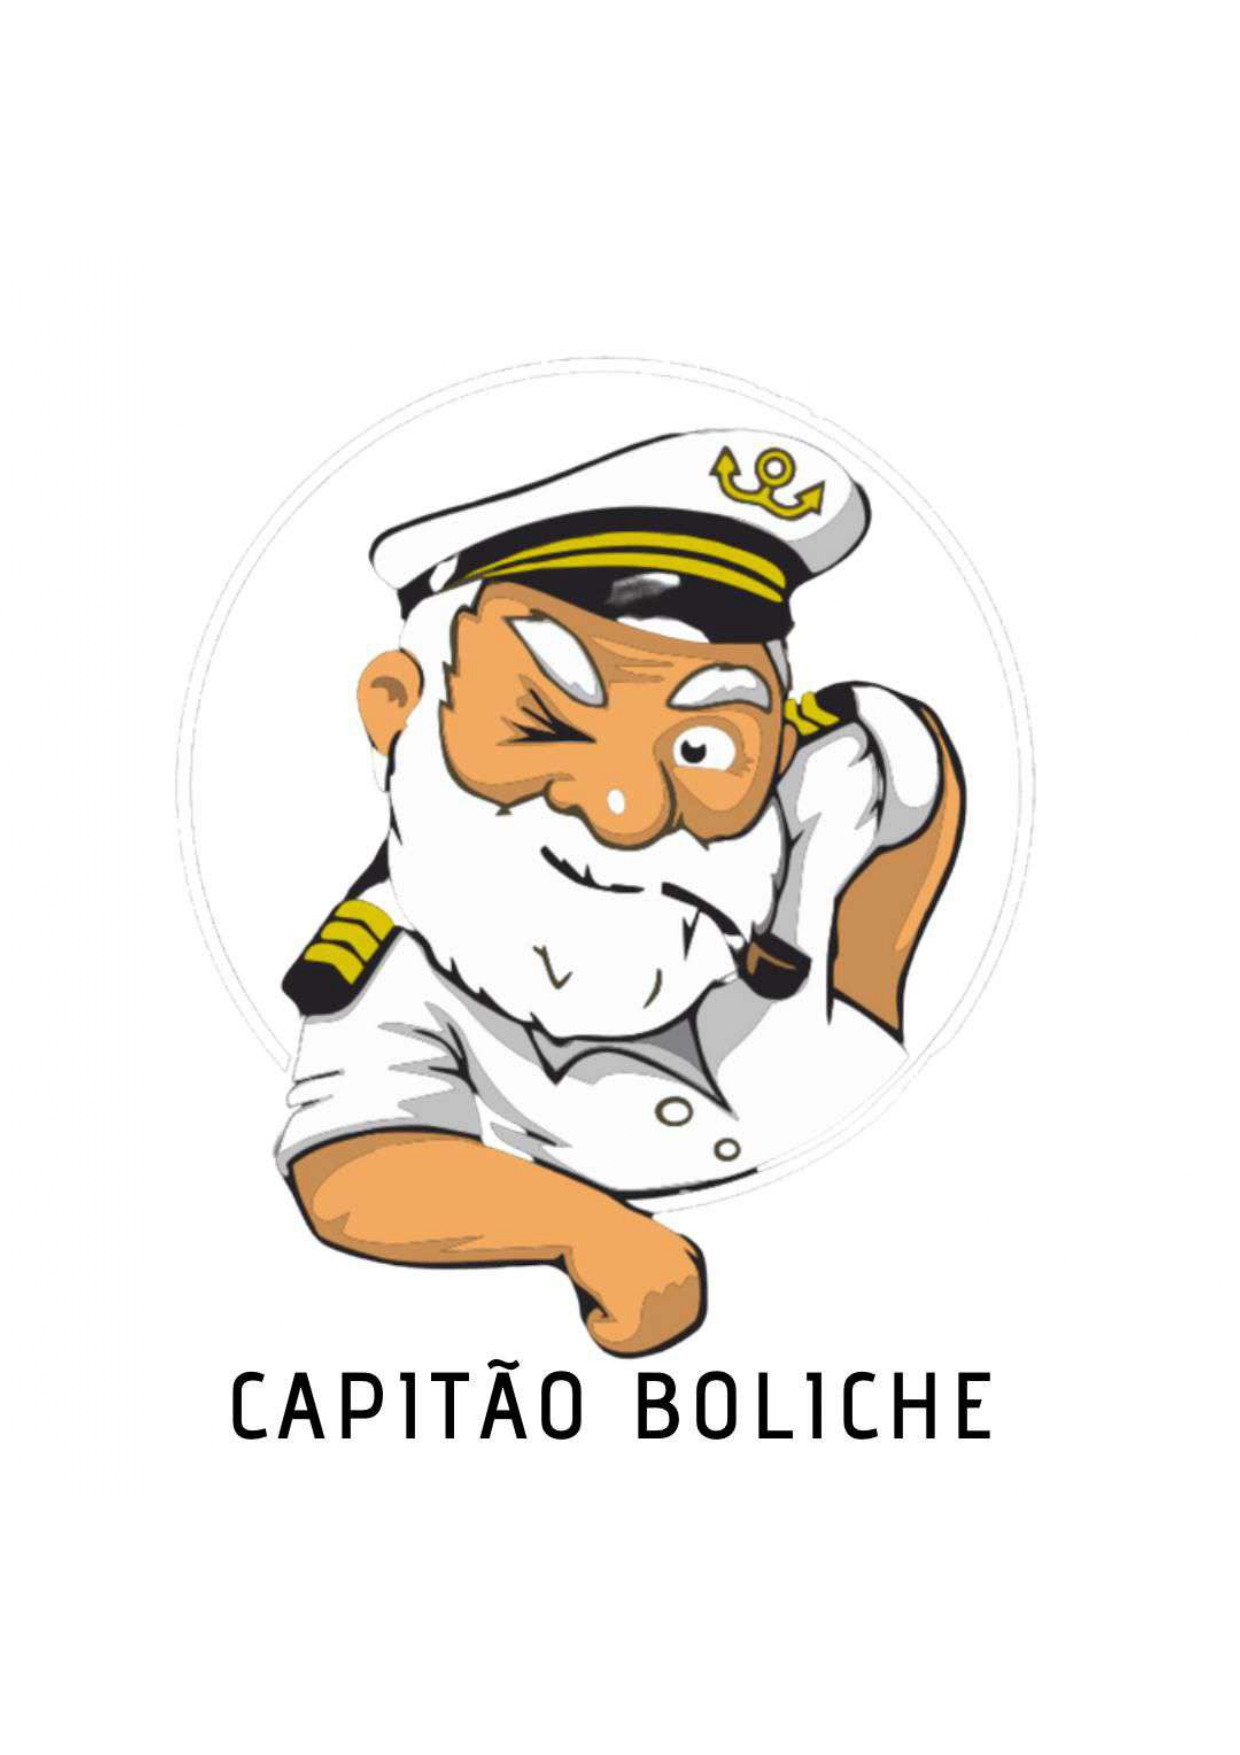  Capitão Boliche